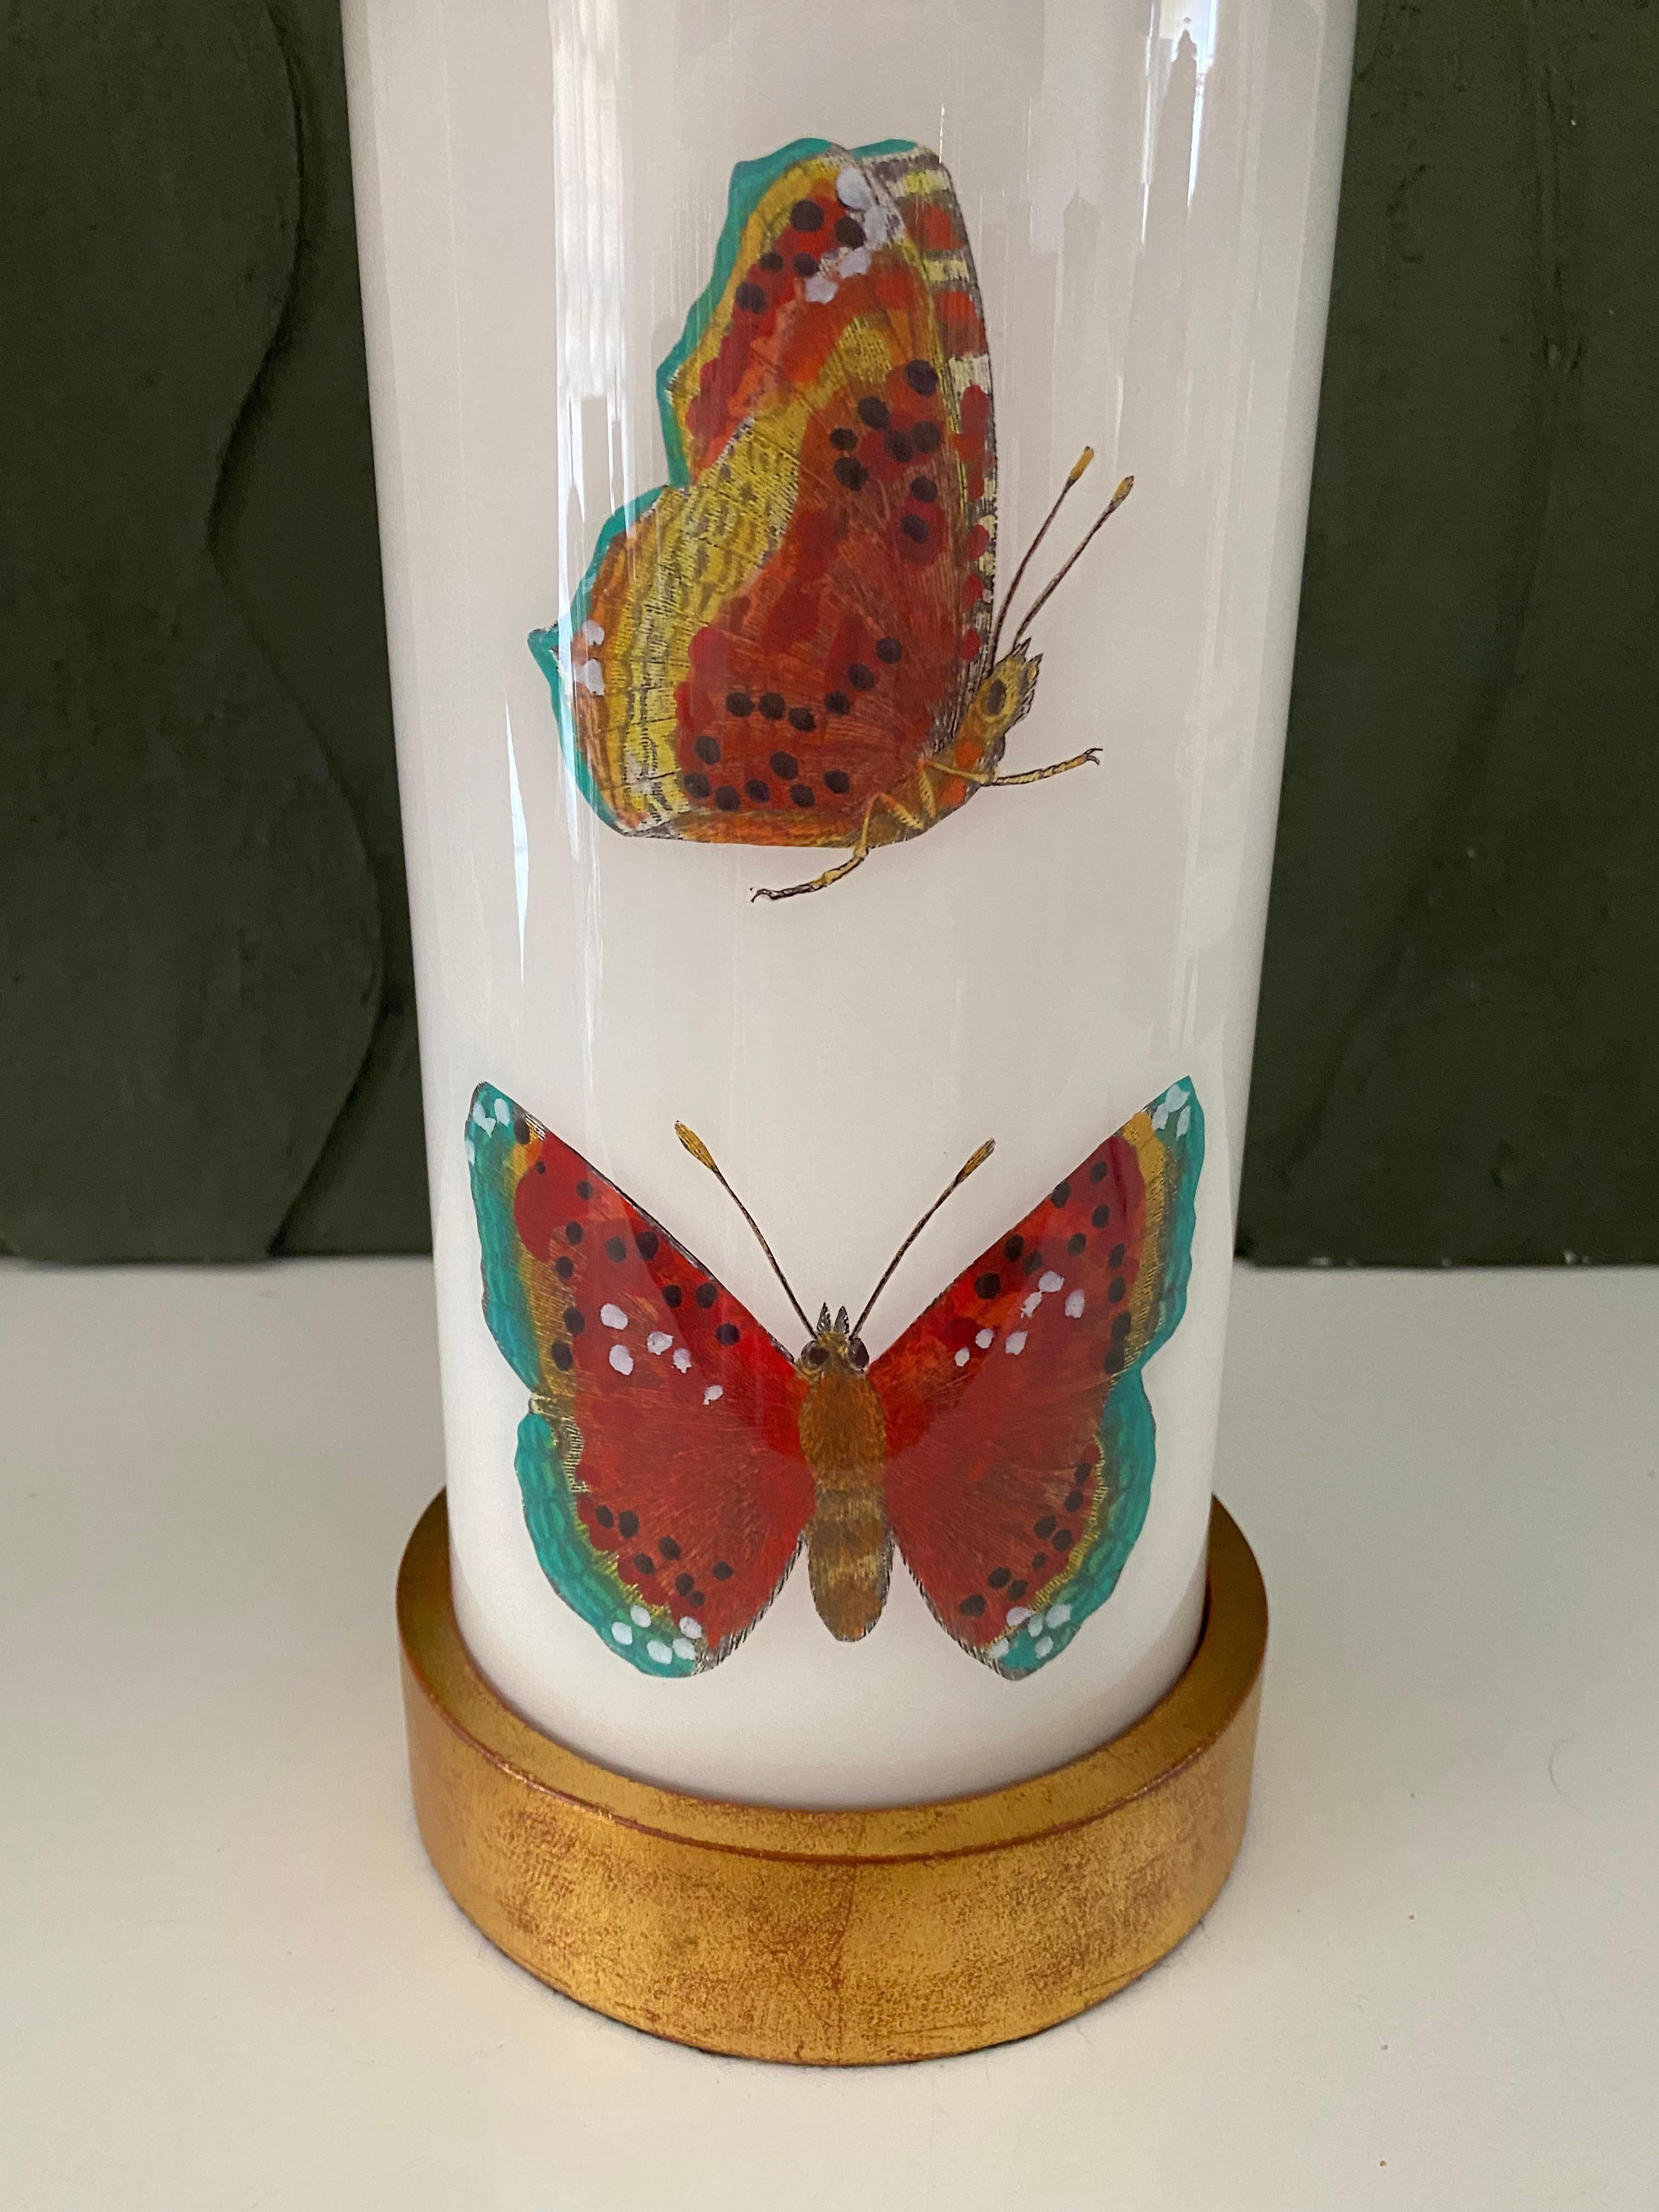 Handgefertigt mit Sorgfalt in Houston, Texas. Diese Glaslampe zeigt eine Auswahl von handkolorierten Gravuren aus dem 18. Jahrhundert mit wunderschönen Insekten in terrakottaroten Farbtönen vor einem sanften weißen Hintergrund. Der Sockel und die